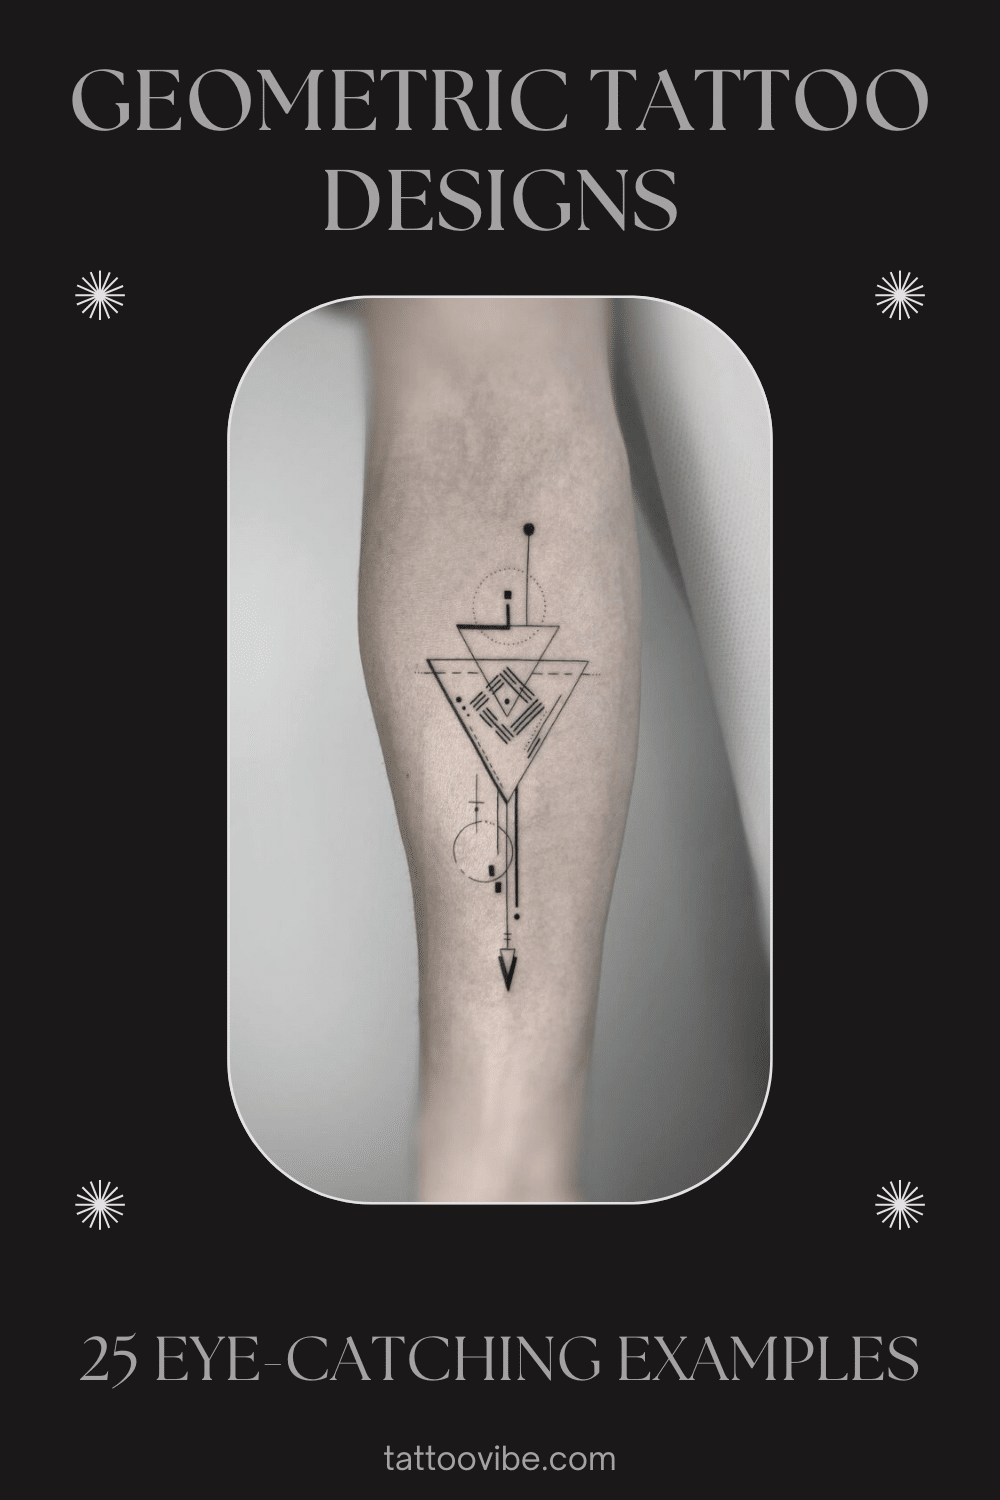 Desenhos de tatuagens geométricas: 25 exemplos apelativos